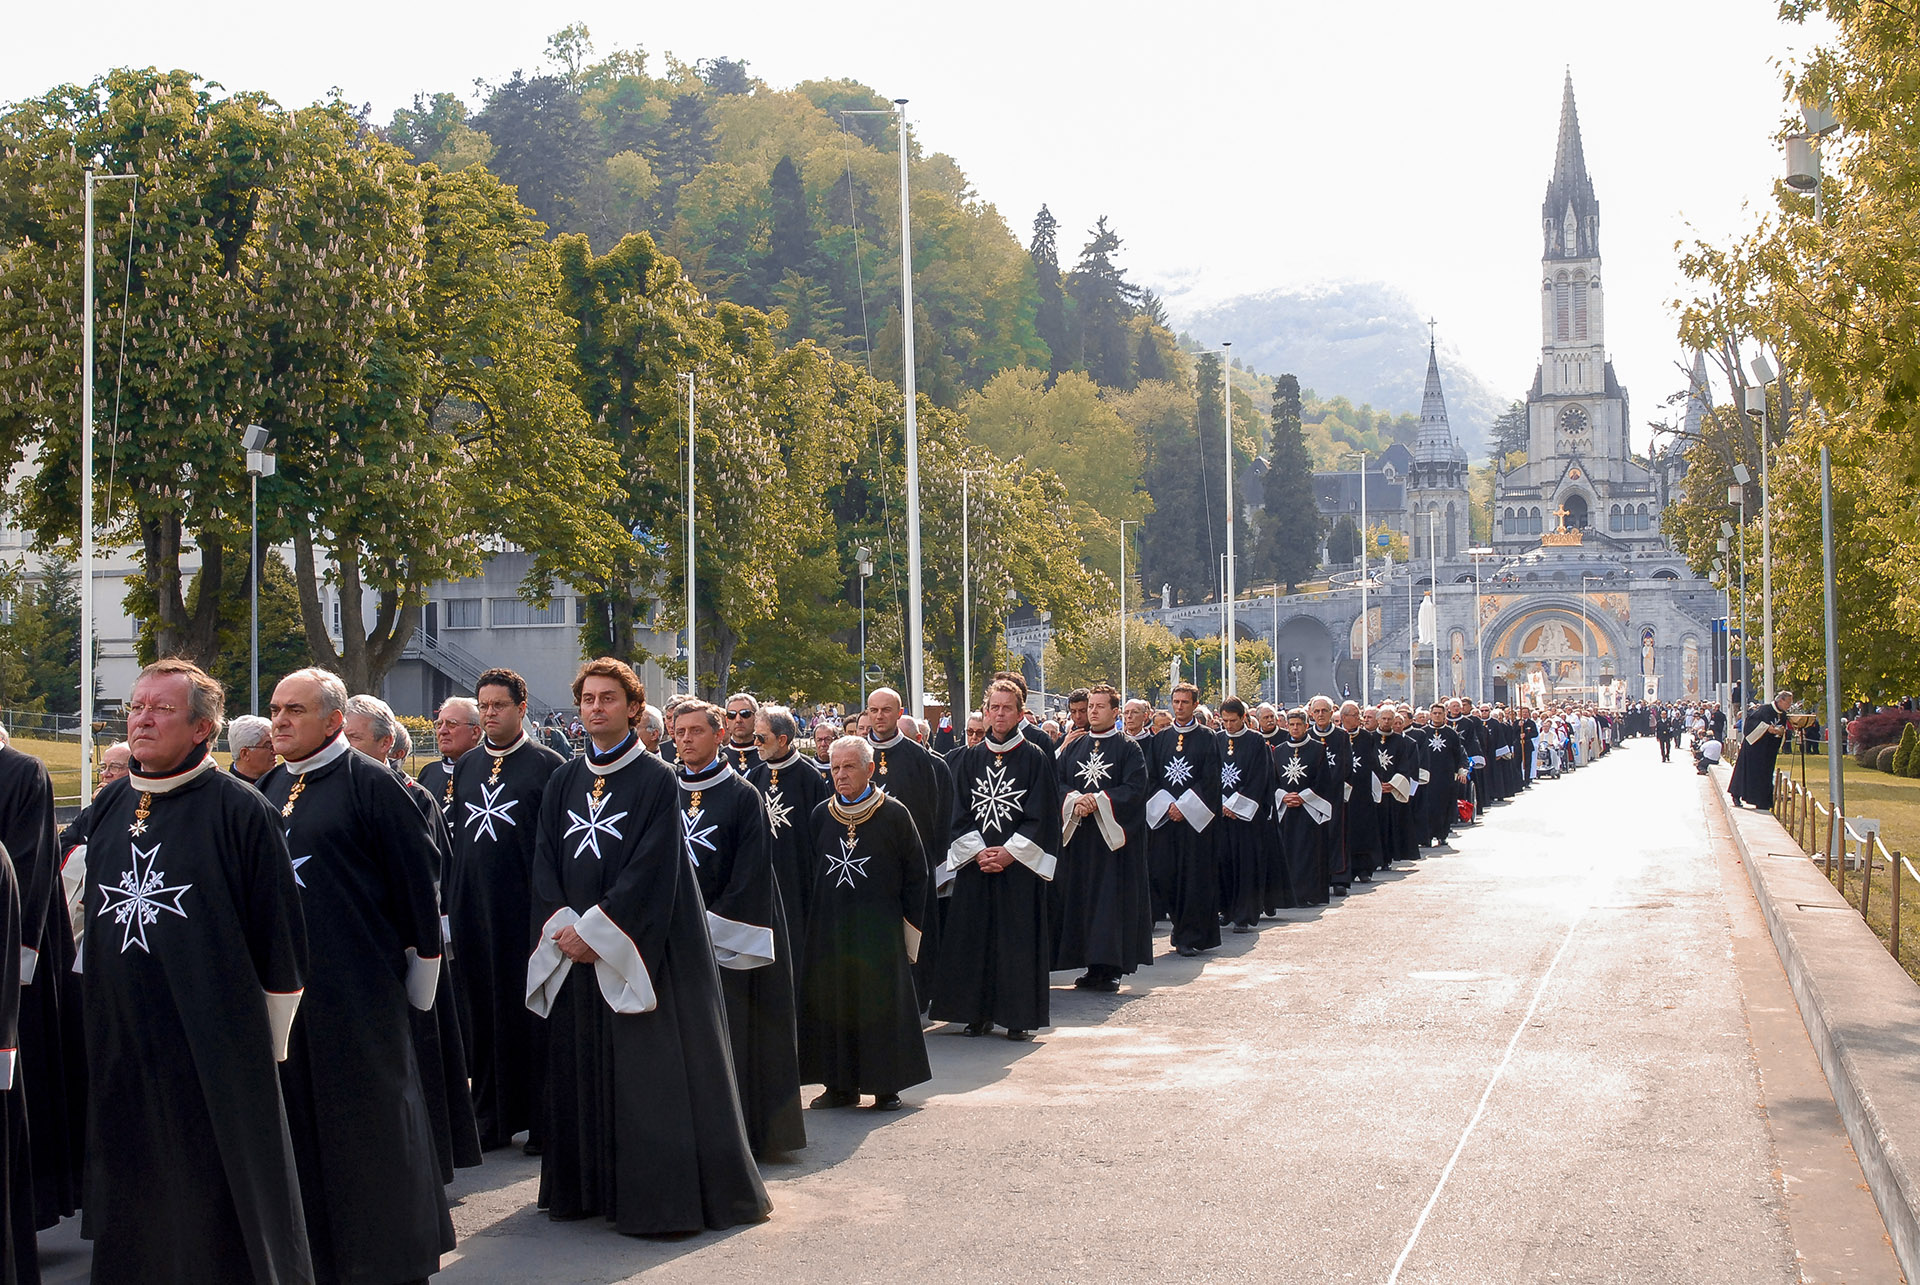 50° pèlerinage international de l’Ordre de Malte a Lourdes